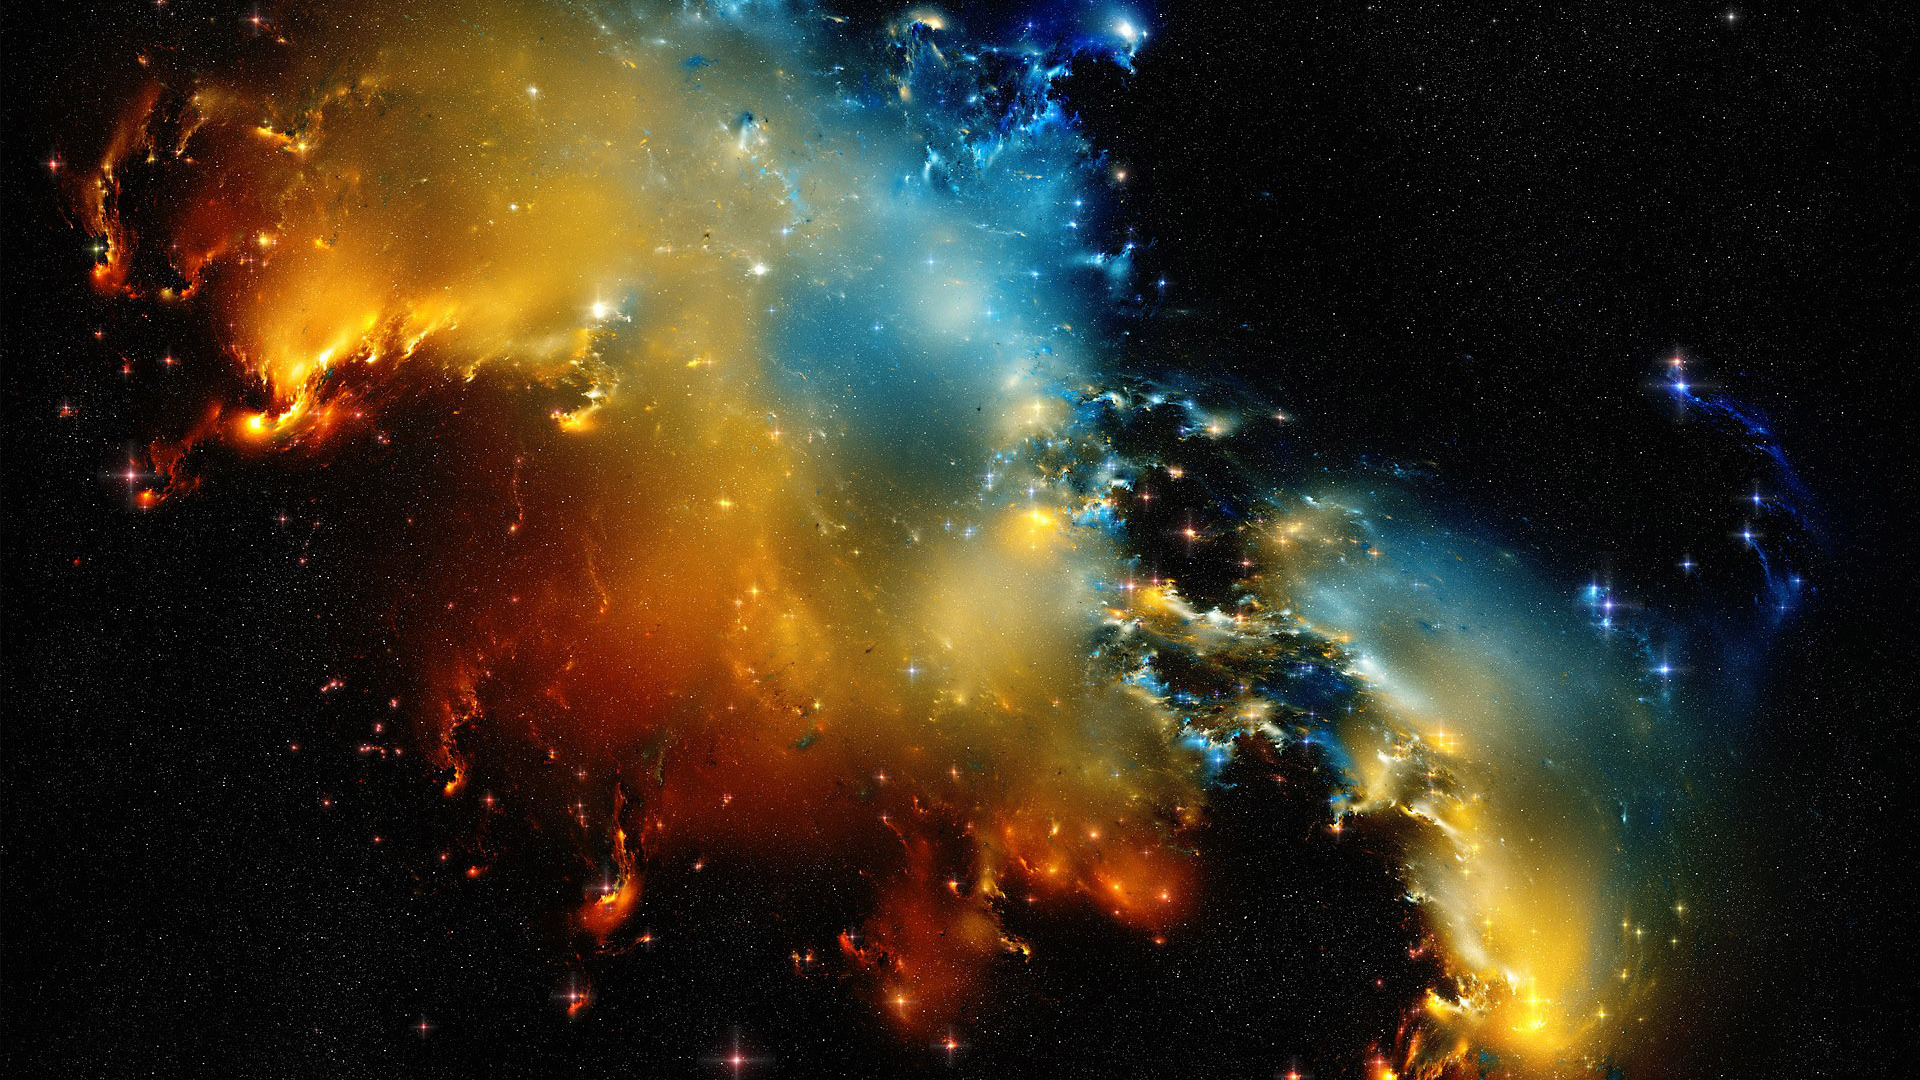 Eagle Nebula Full HD Wallpaper Amazing Wallpaperz